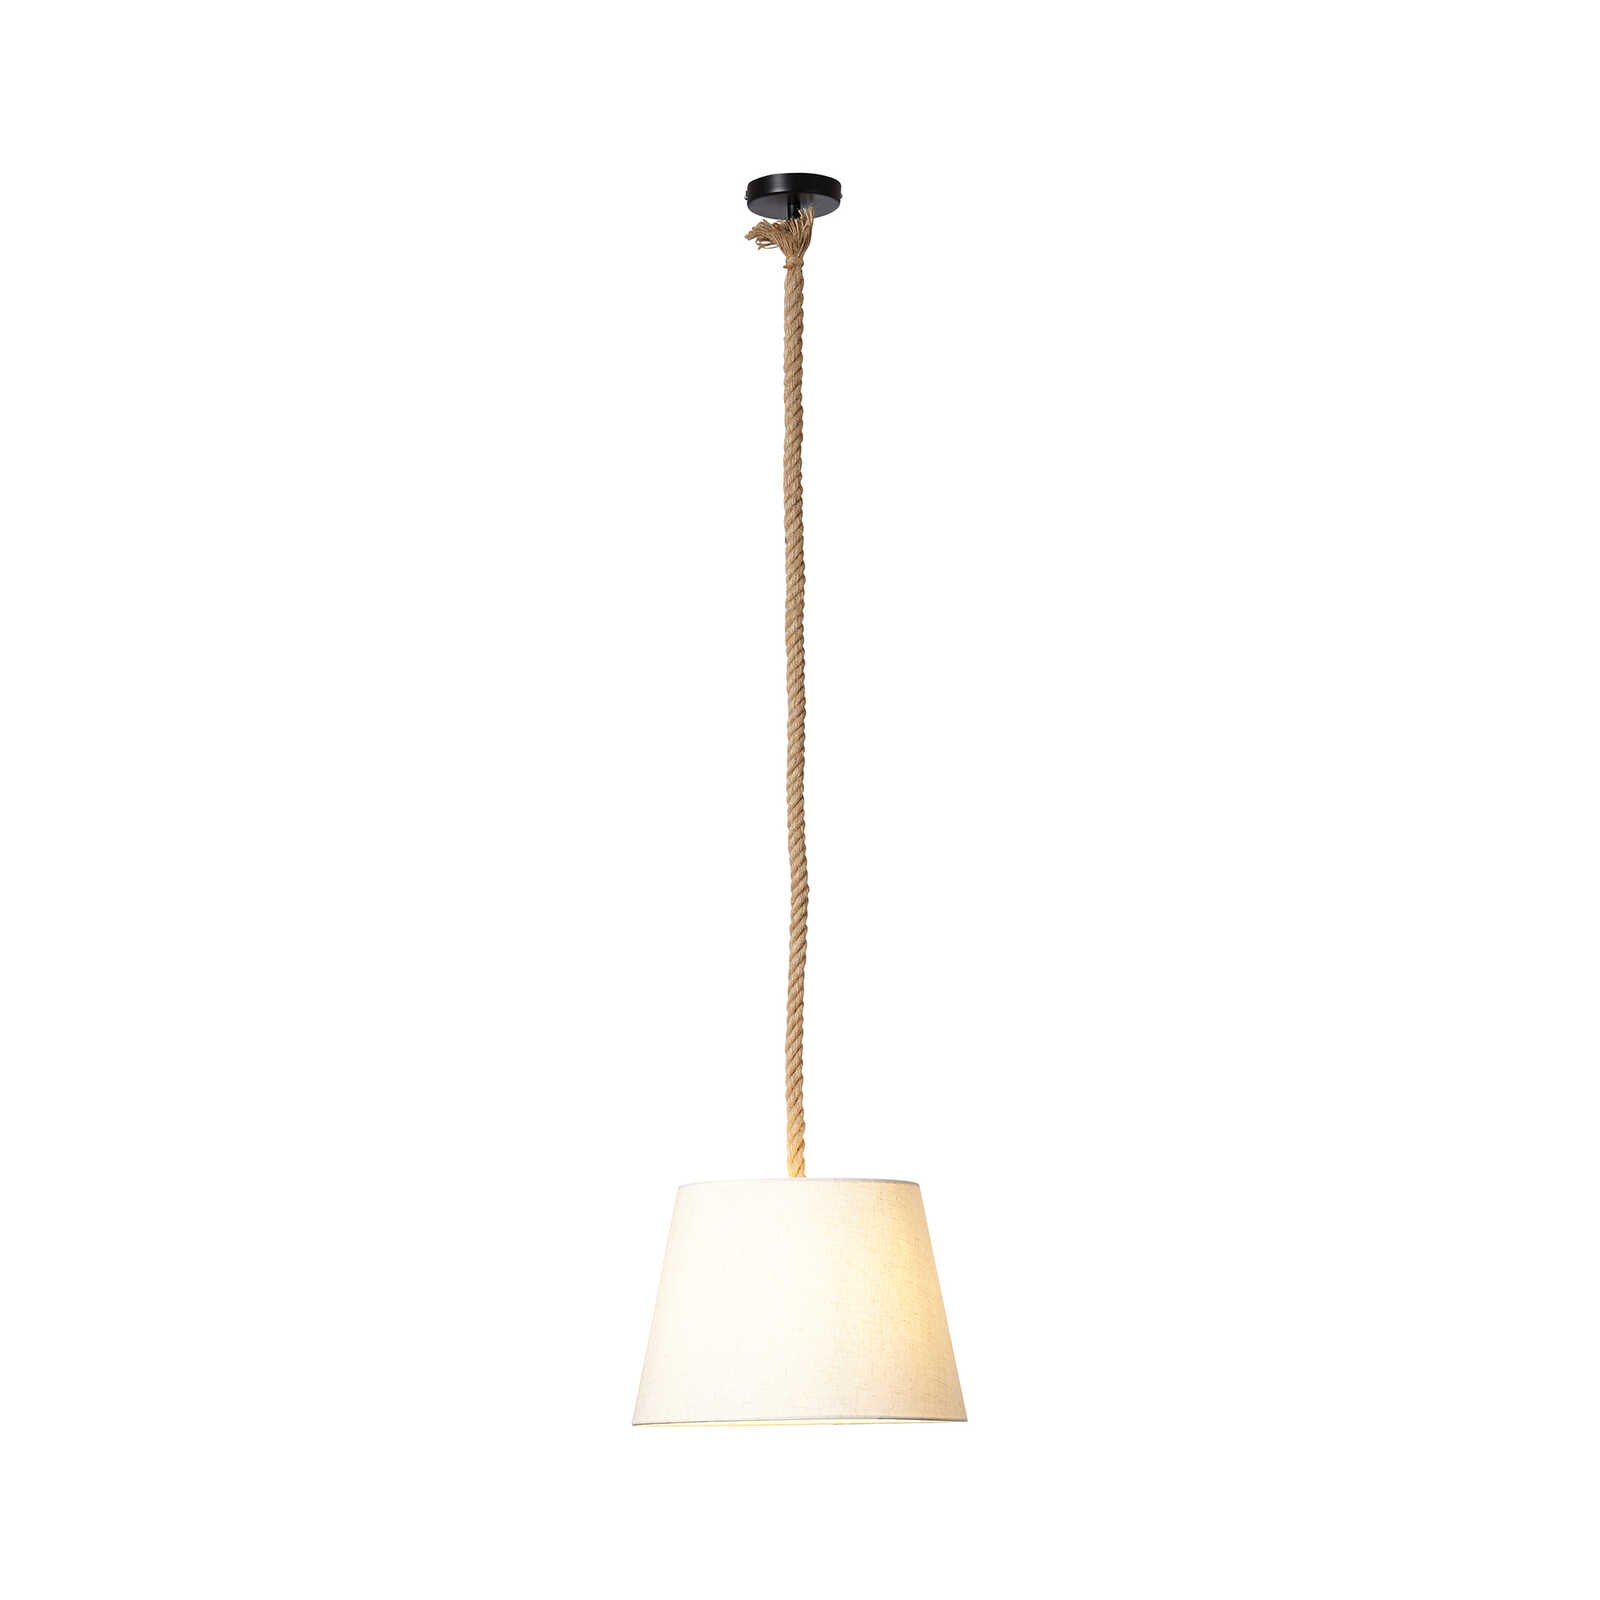 Textiel hanglamp - Milaan 2 - Bruin
